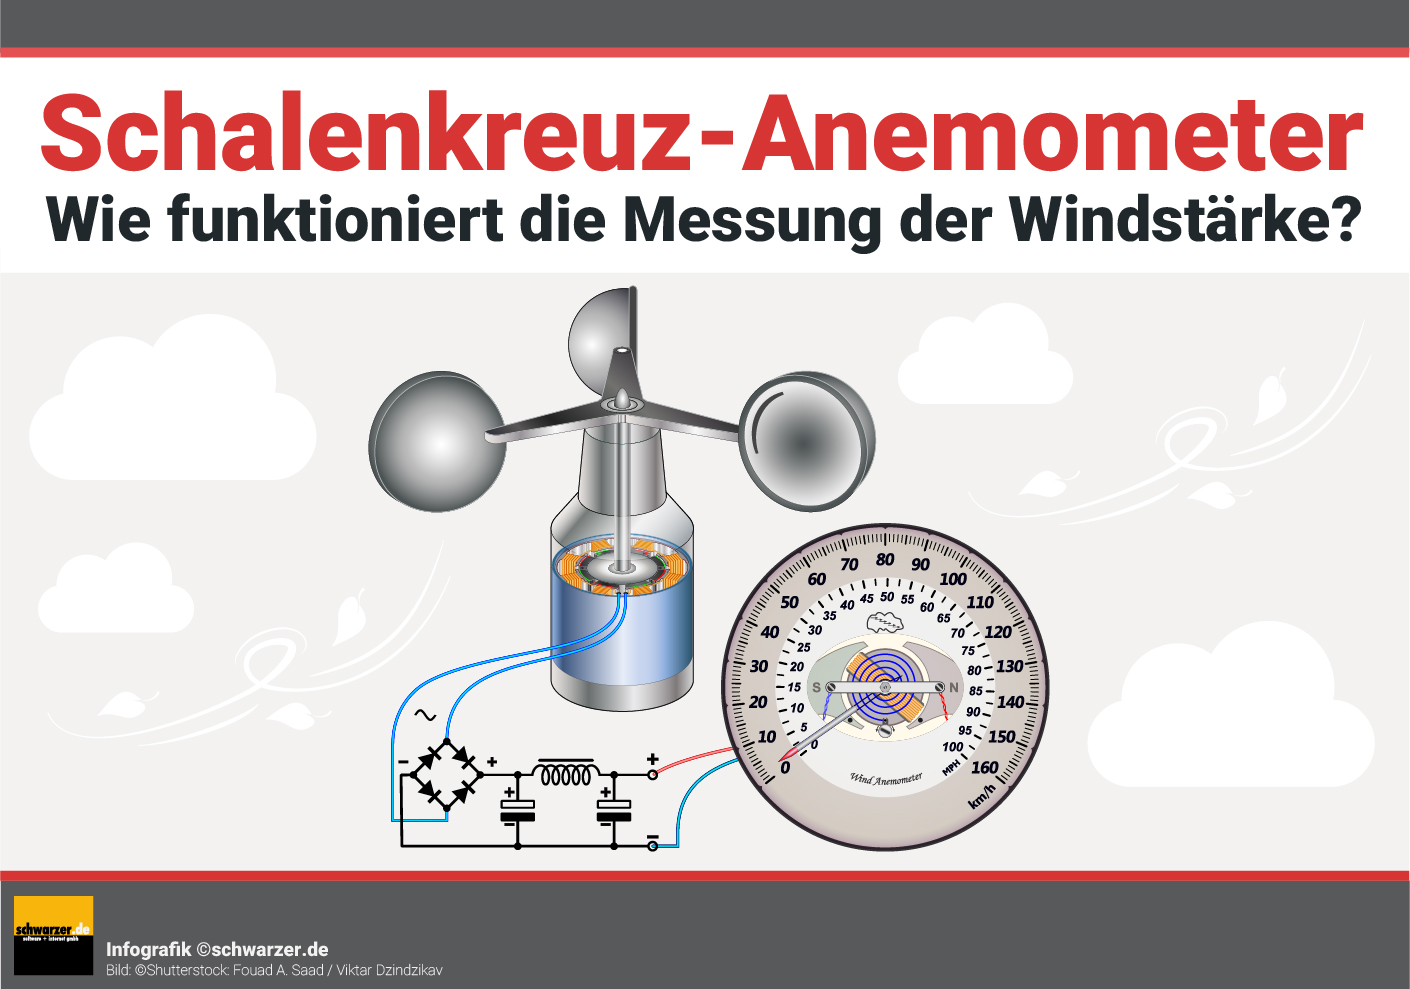 Infografik: Wie funktioniert die Messung der Windstärke bei einem Schalenkreuz-Anemometer?